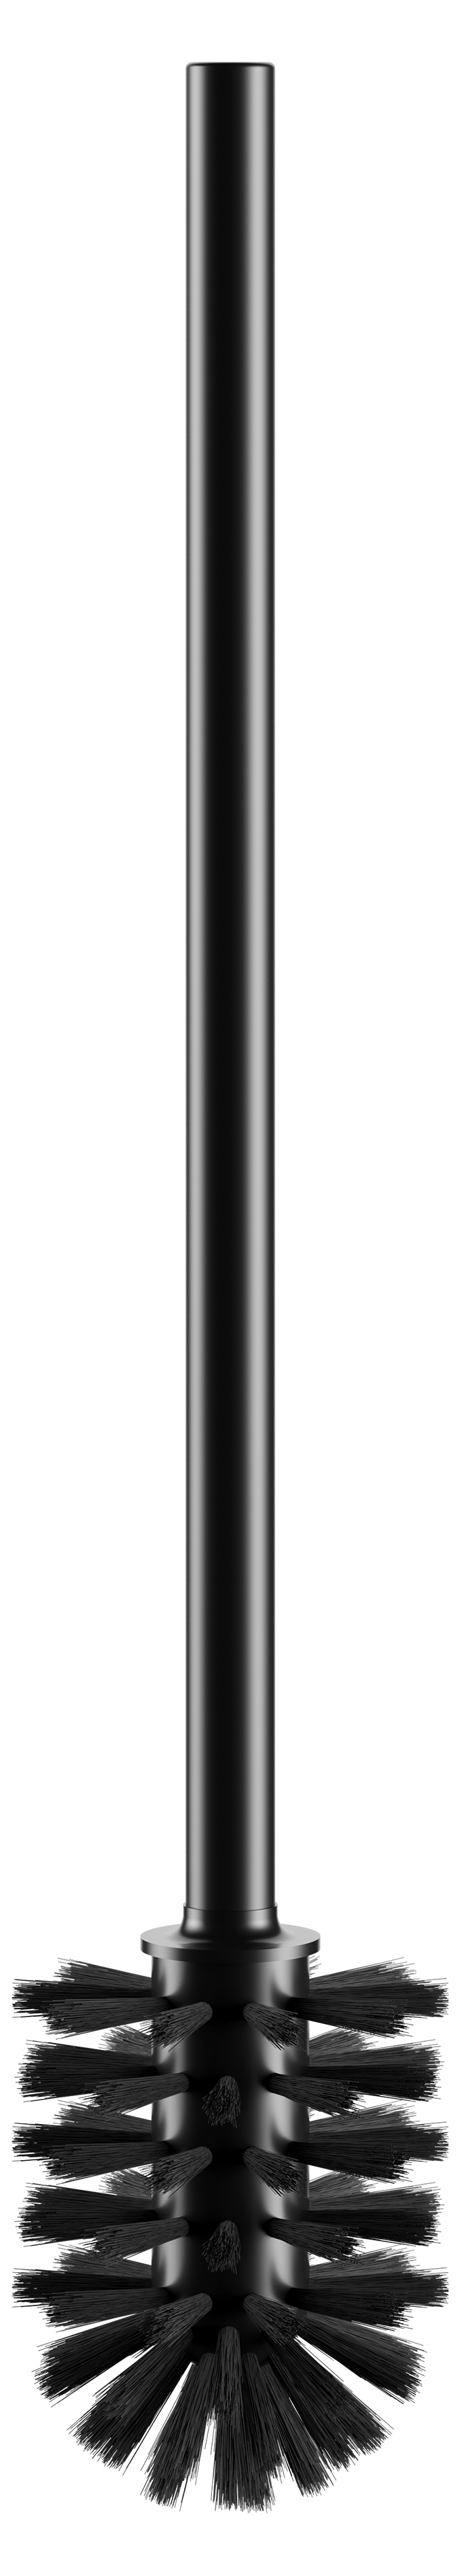 Туалетный ёрш с ручкой KEUCO Collection Reva 14972 374001 с запасной головкой ёршика, чёрный матовый